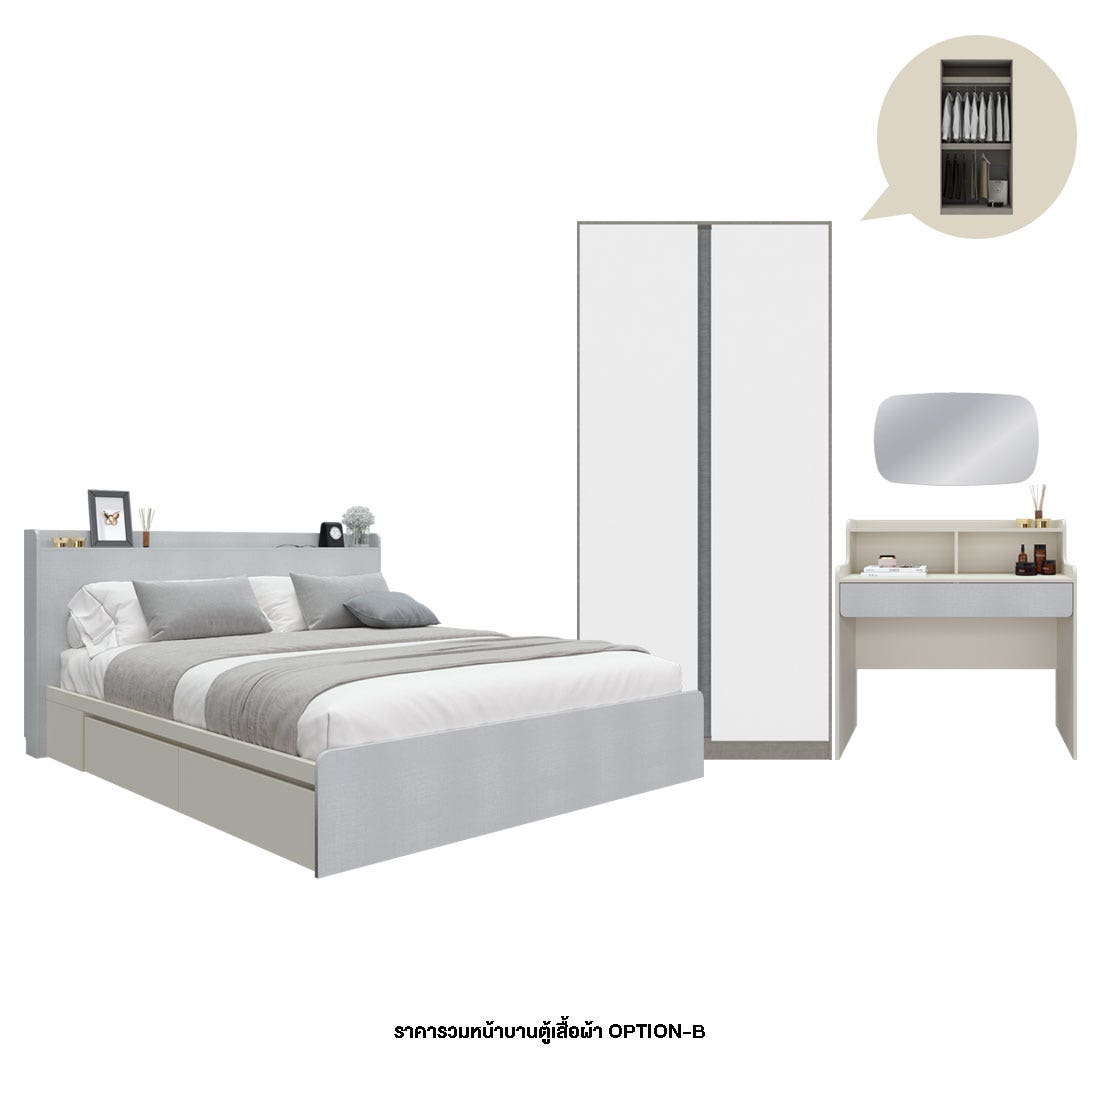 ชุดห้องนอน 5 ฟุต & ตู้ Blox Option B 100 ซม. & โต๊ะเครื่องแป้ง และกระจกรุ่น Aiko สีขาว01